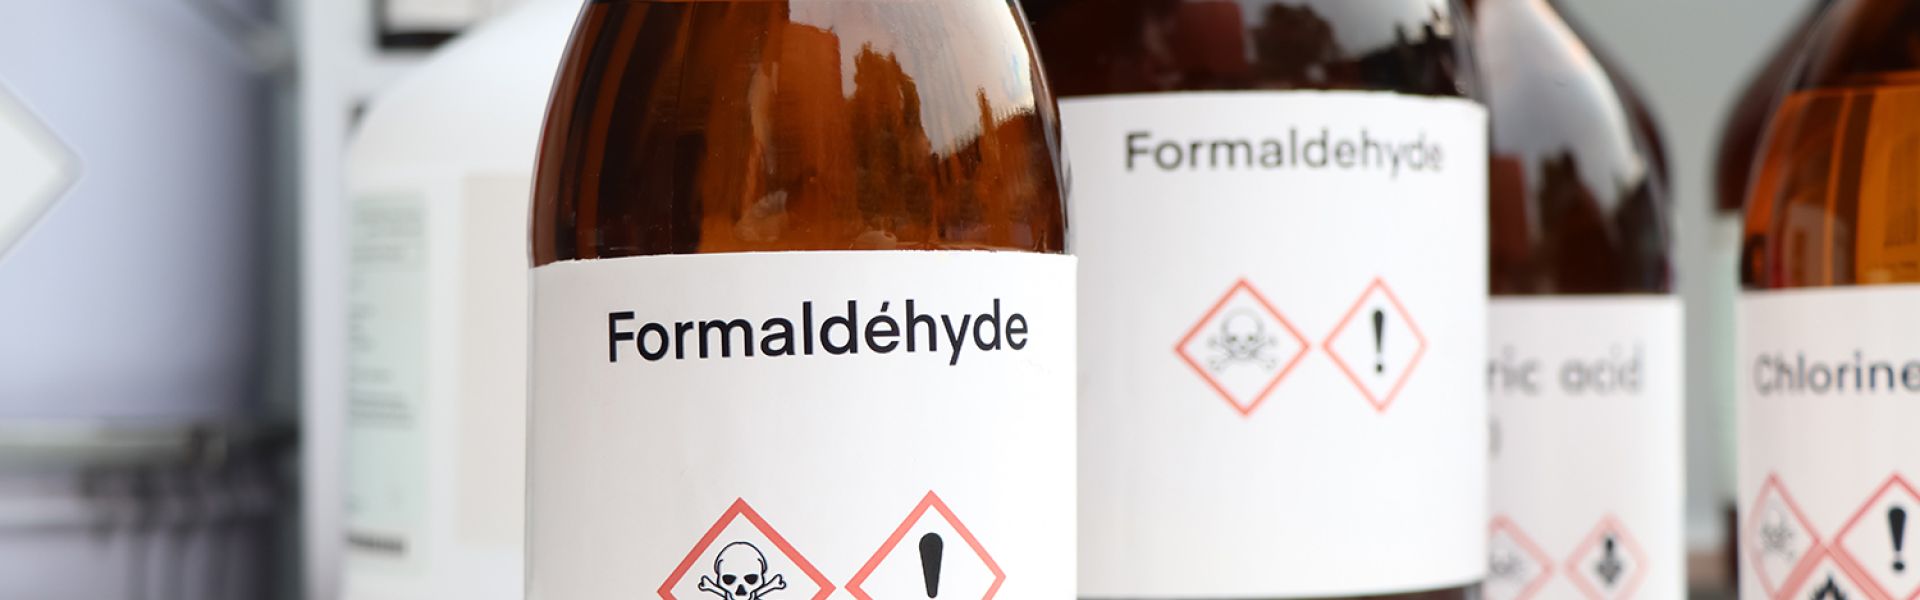  Expositions professionnelles au formaldéhyde : un lien avéré avec des leucémies myéloïdes